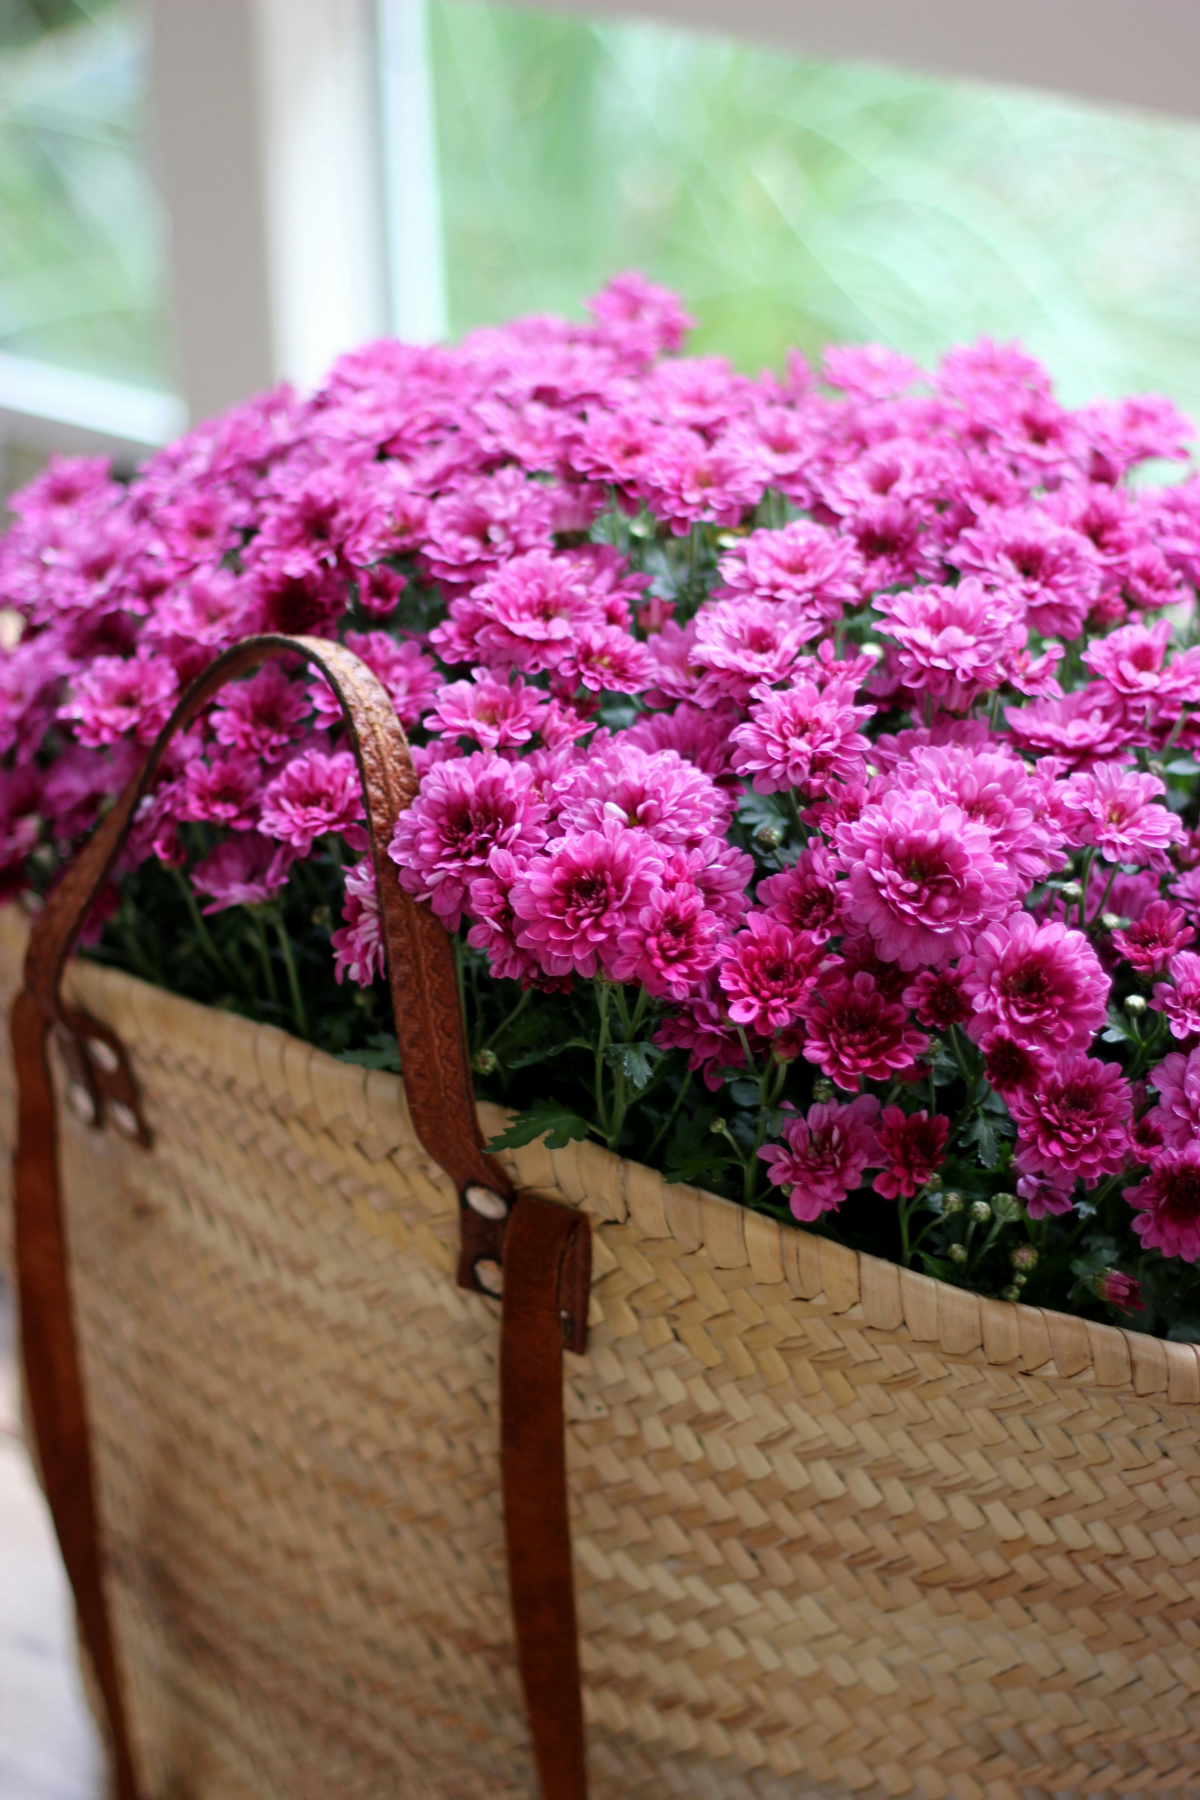 purple chrysanthemums in a basket